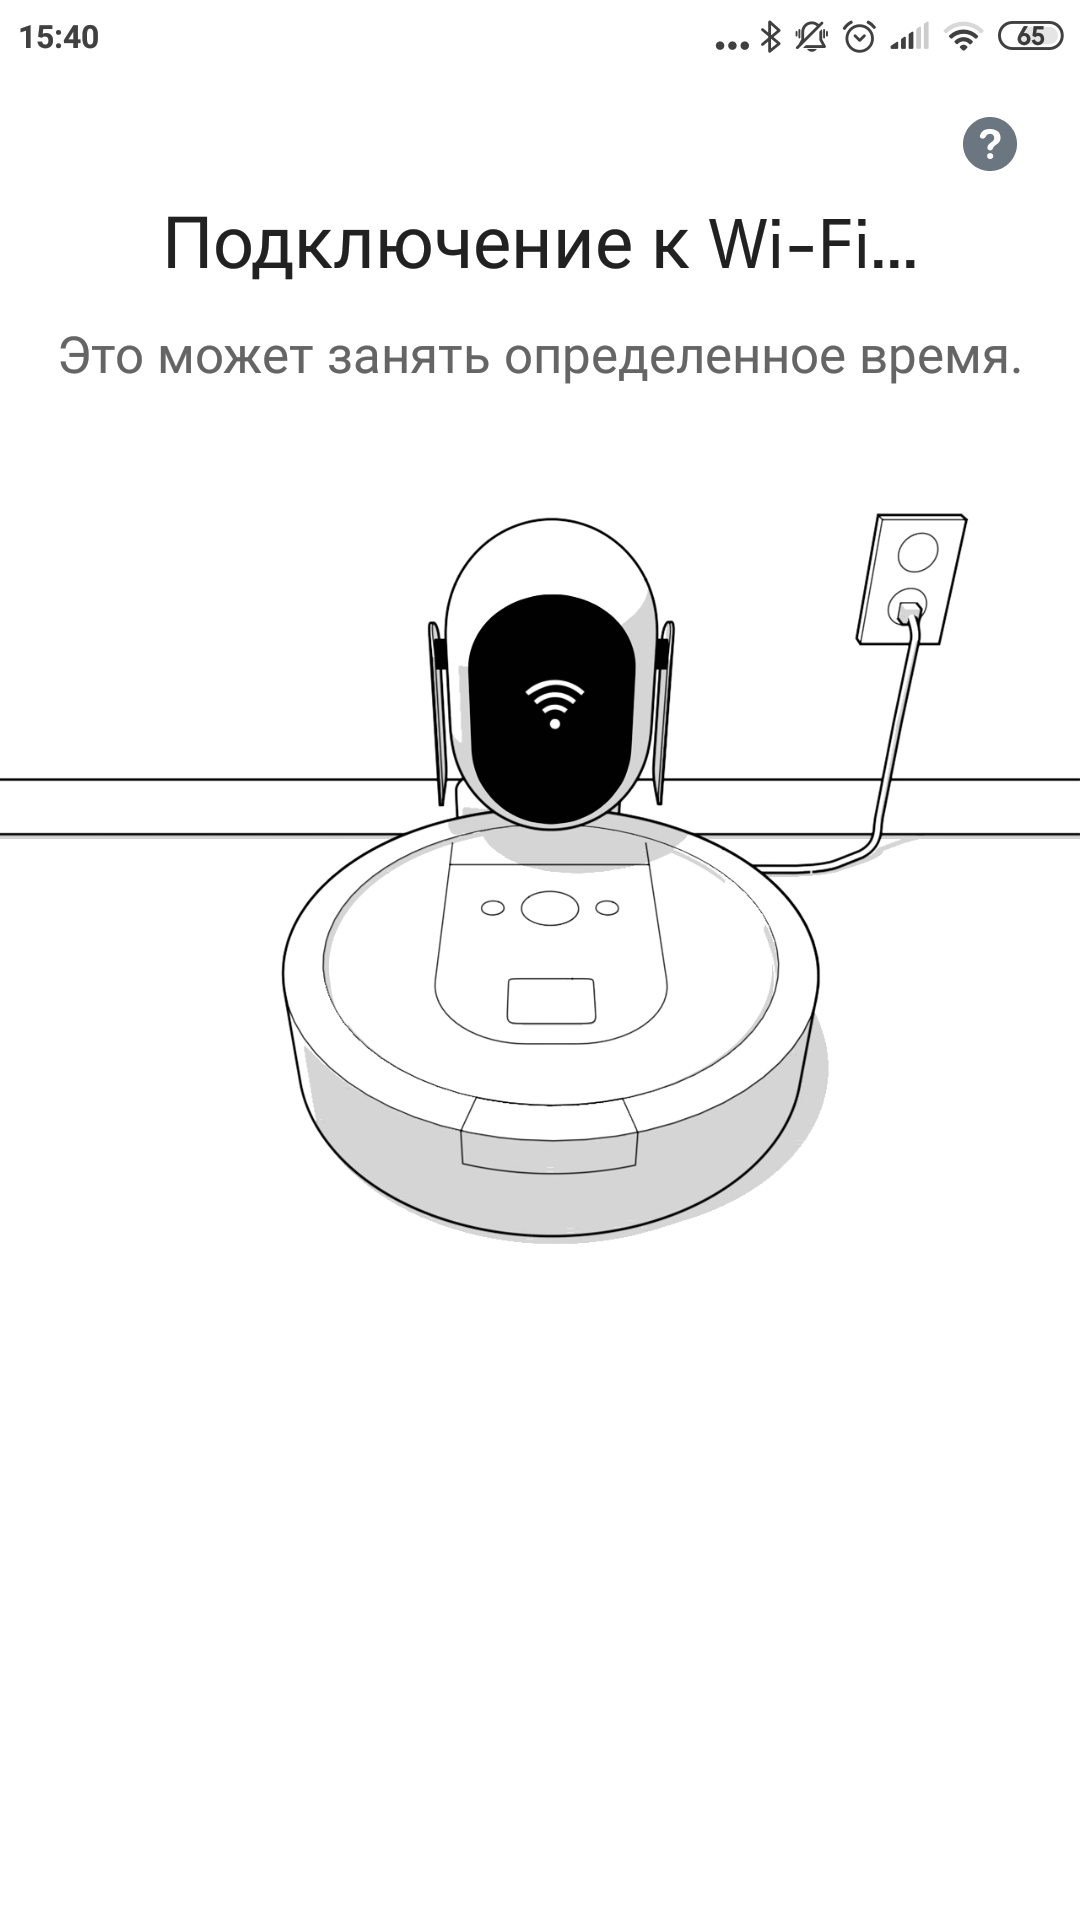 Обзор роботов-уборщиков iRobot Roomba s9+ и Braava jet m6: парное катание-55